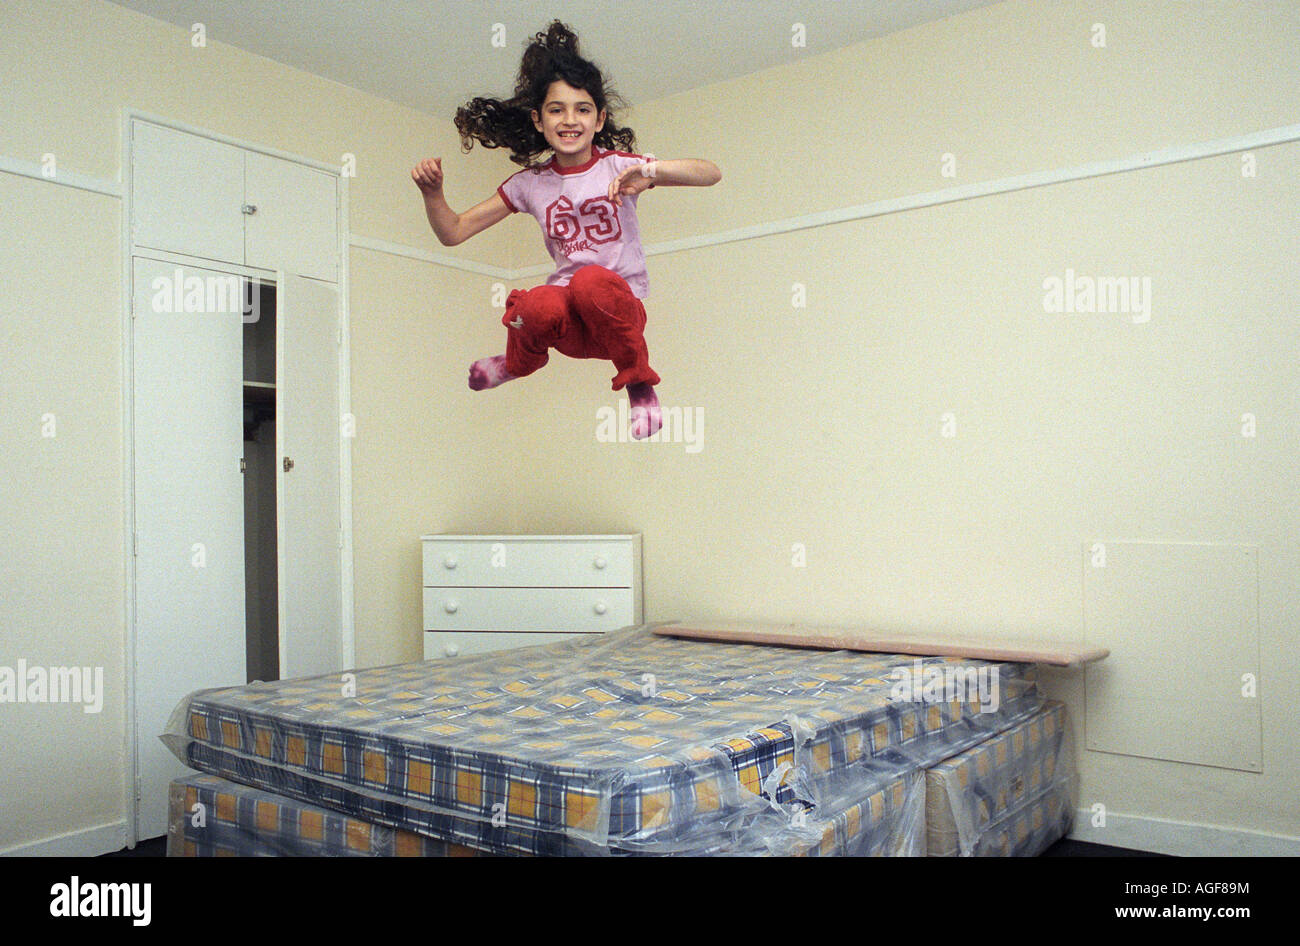 Una giovane ragazza di età compresa tra i 9, salta su un letto in una stanza vuota. Foto Stock